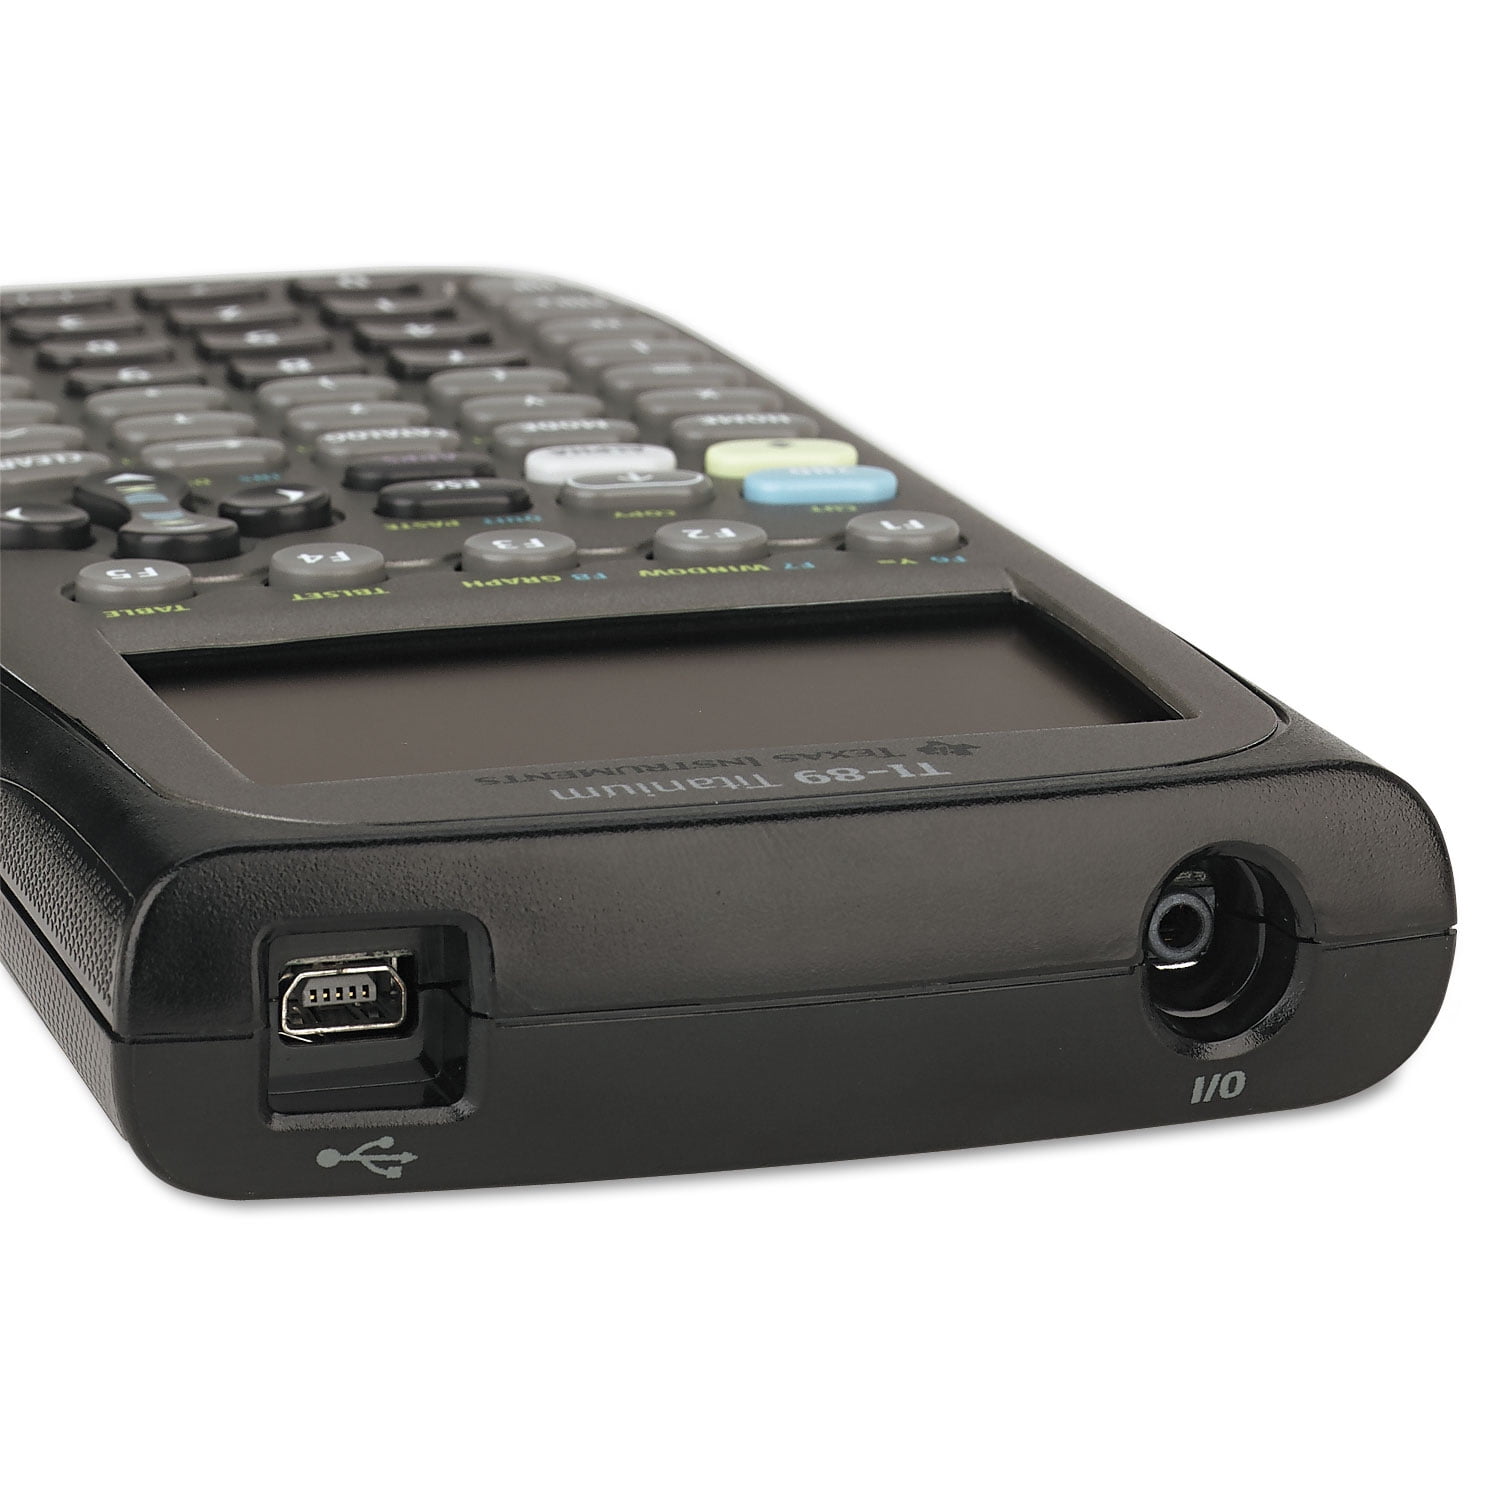 安い卸売り Texas Instruments TI-89 Titanium Programmable Graphing Calculato 電卓  MAILGERIMOB